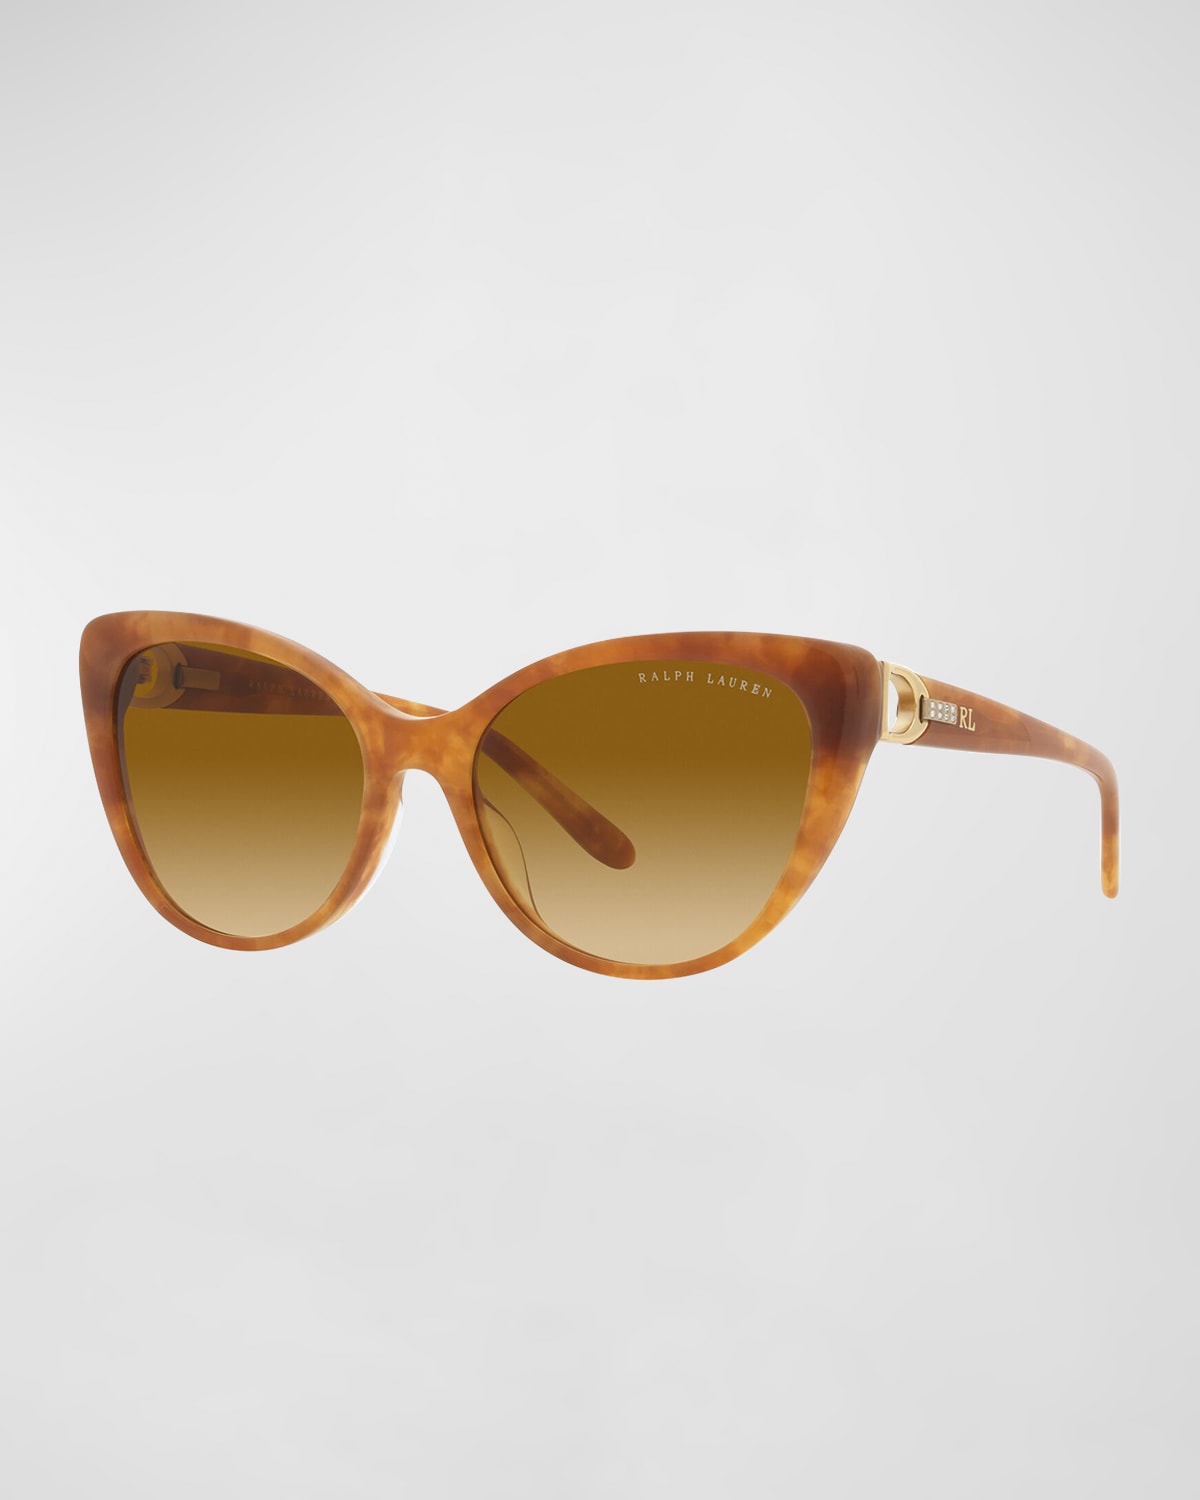 Crystal-Embellished Golden Acetate Cat-Eye Sunglasses